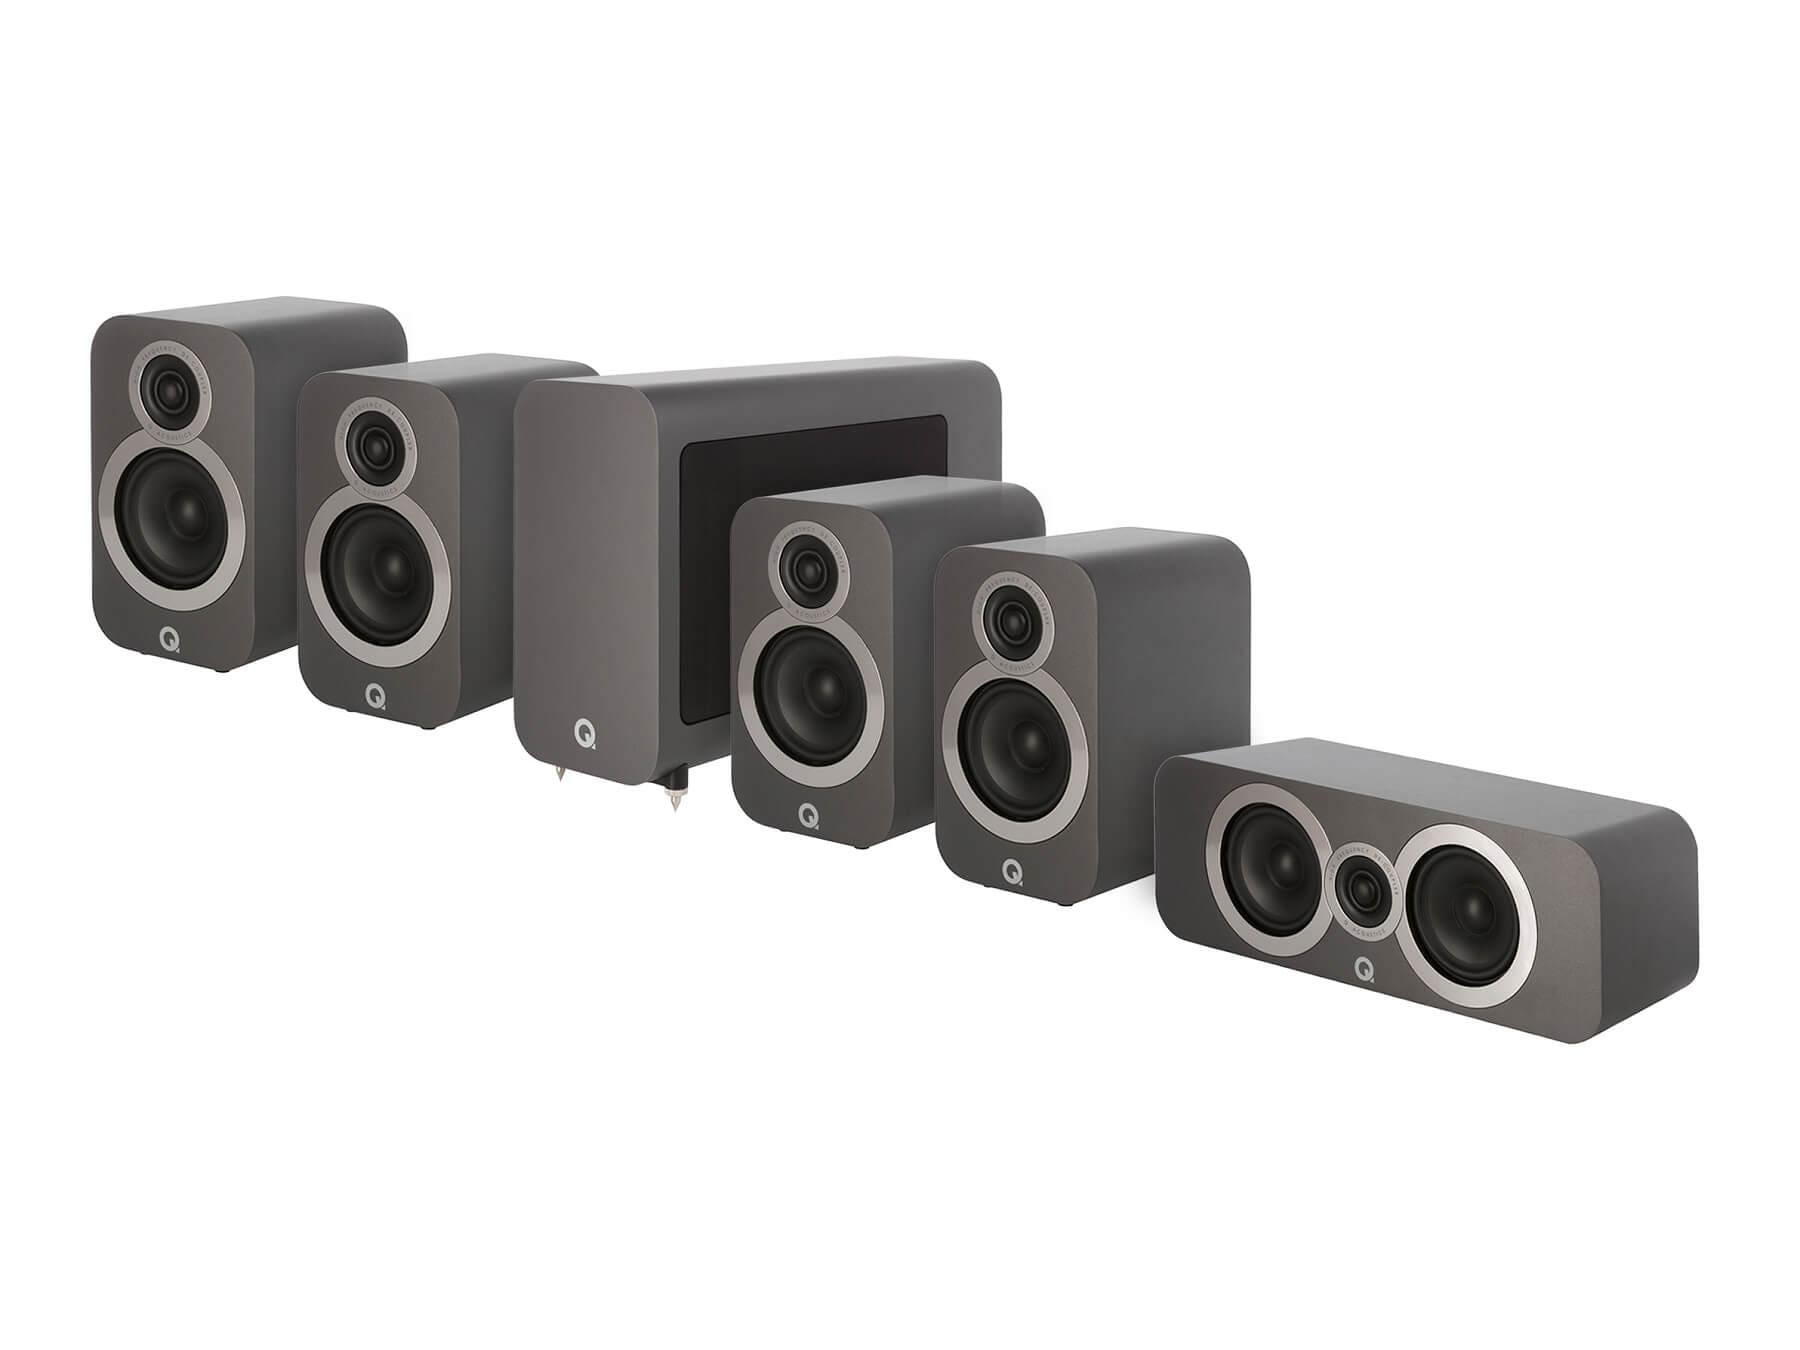 Q Acoustics 3010i 5.1 - Cinema Pack Speakers - Graphite